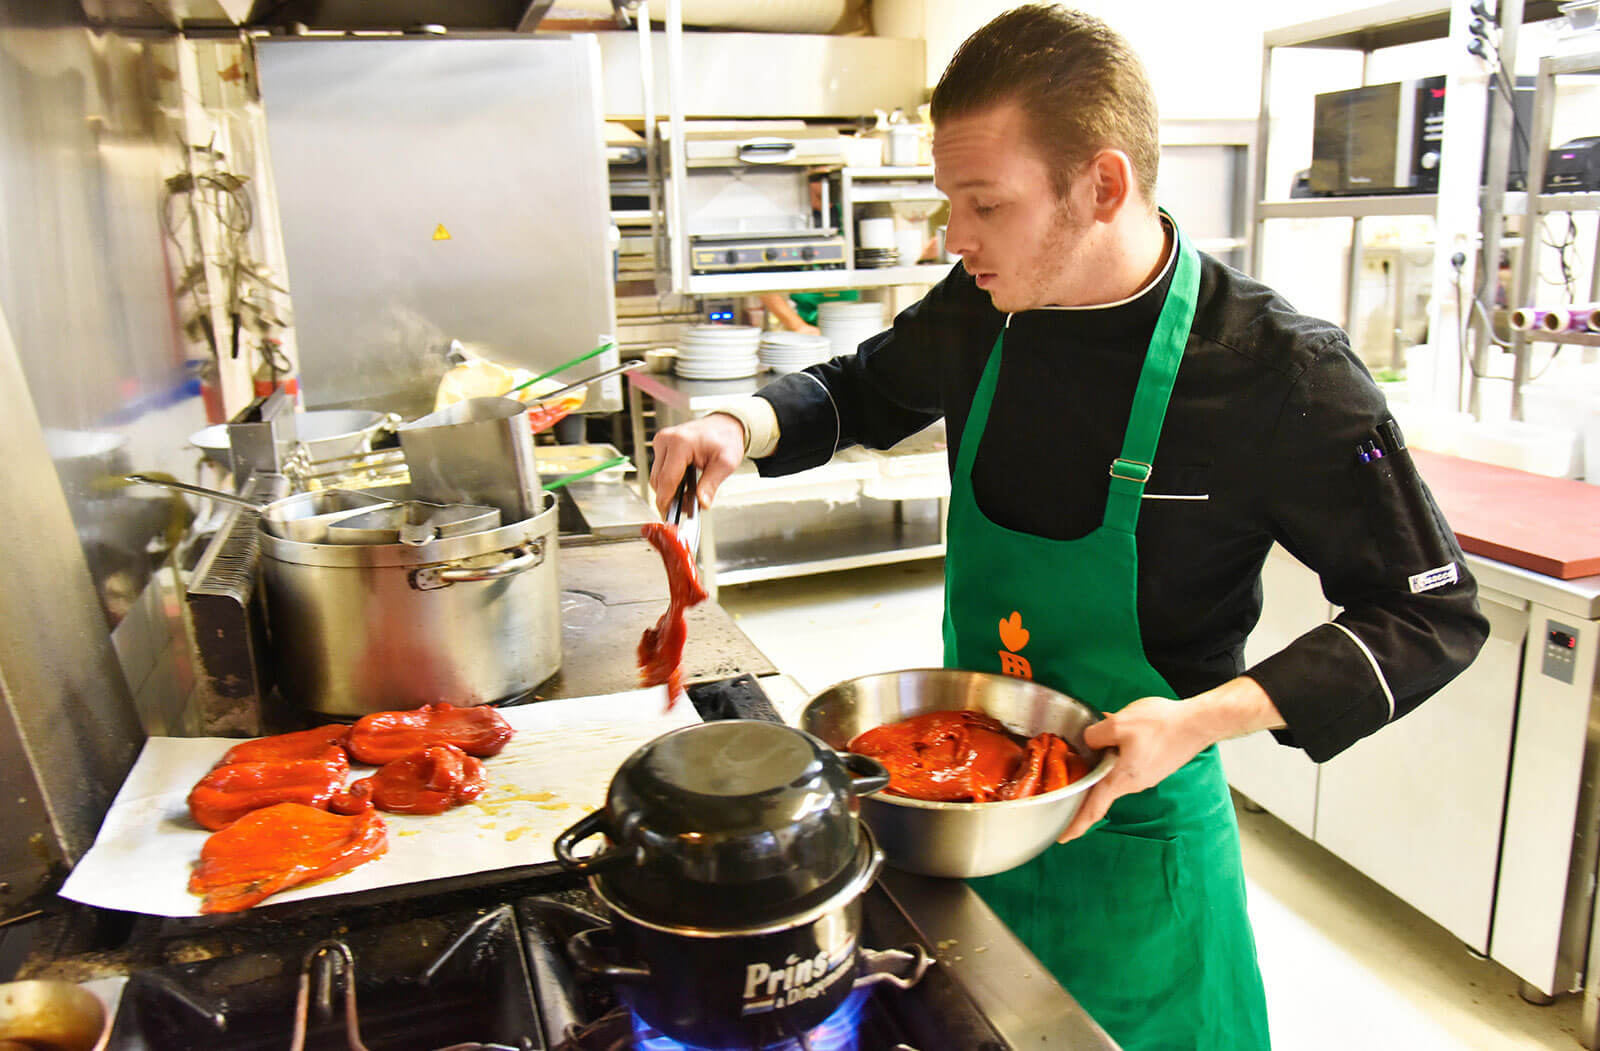 In een keuken van een restaurant legt een man stukken vlees in een pan. Hij draagt een groene schort met een oranje wortel erop.